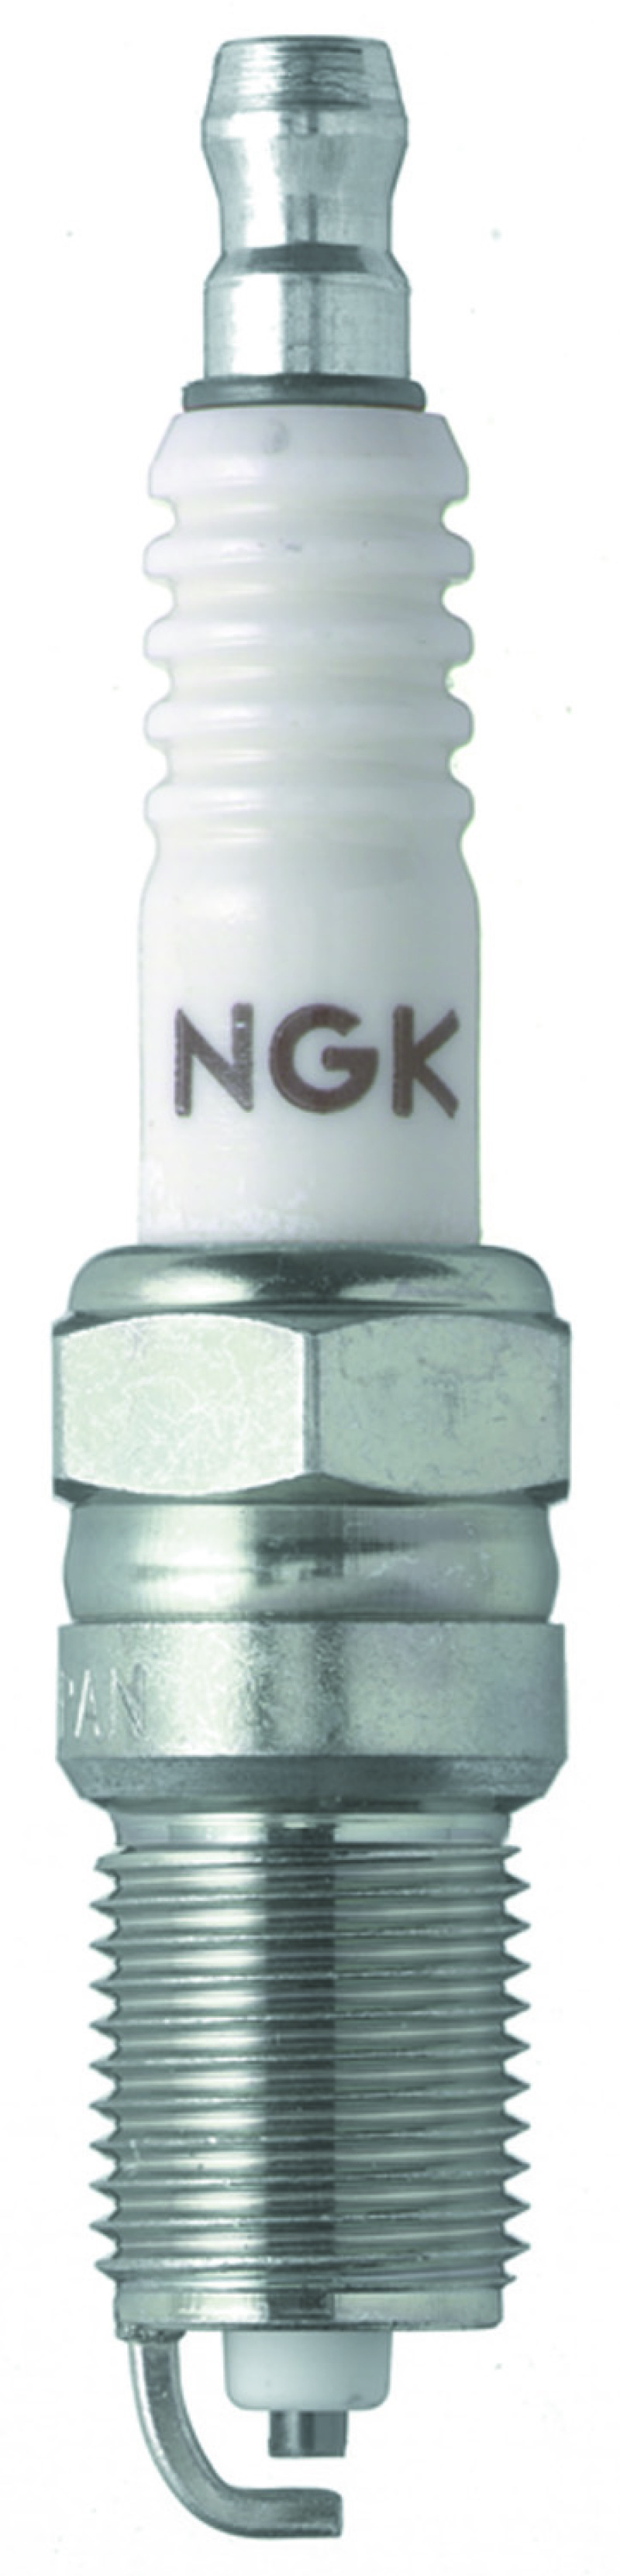 NGK Nickel Spark Plug Box of 4 (R5724-9) - 7891